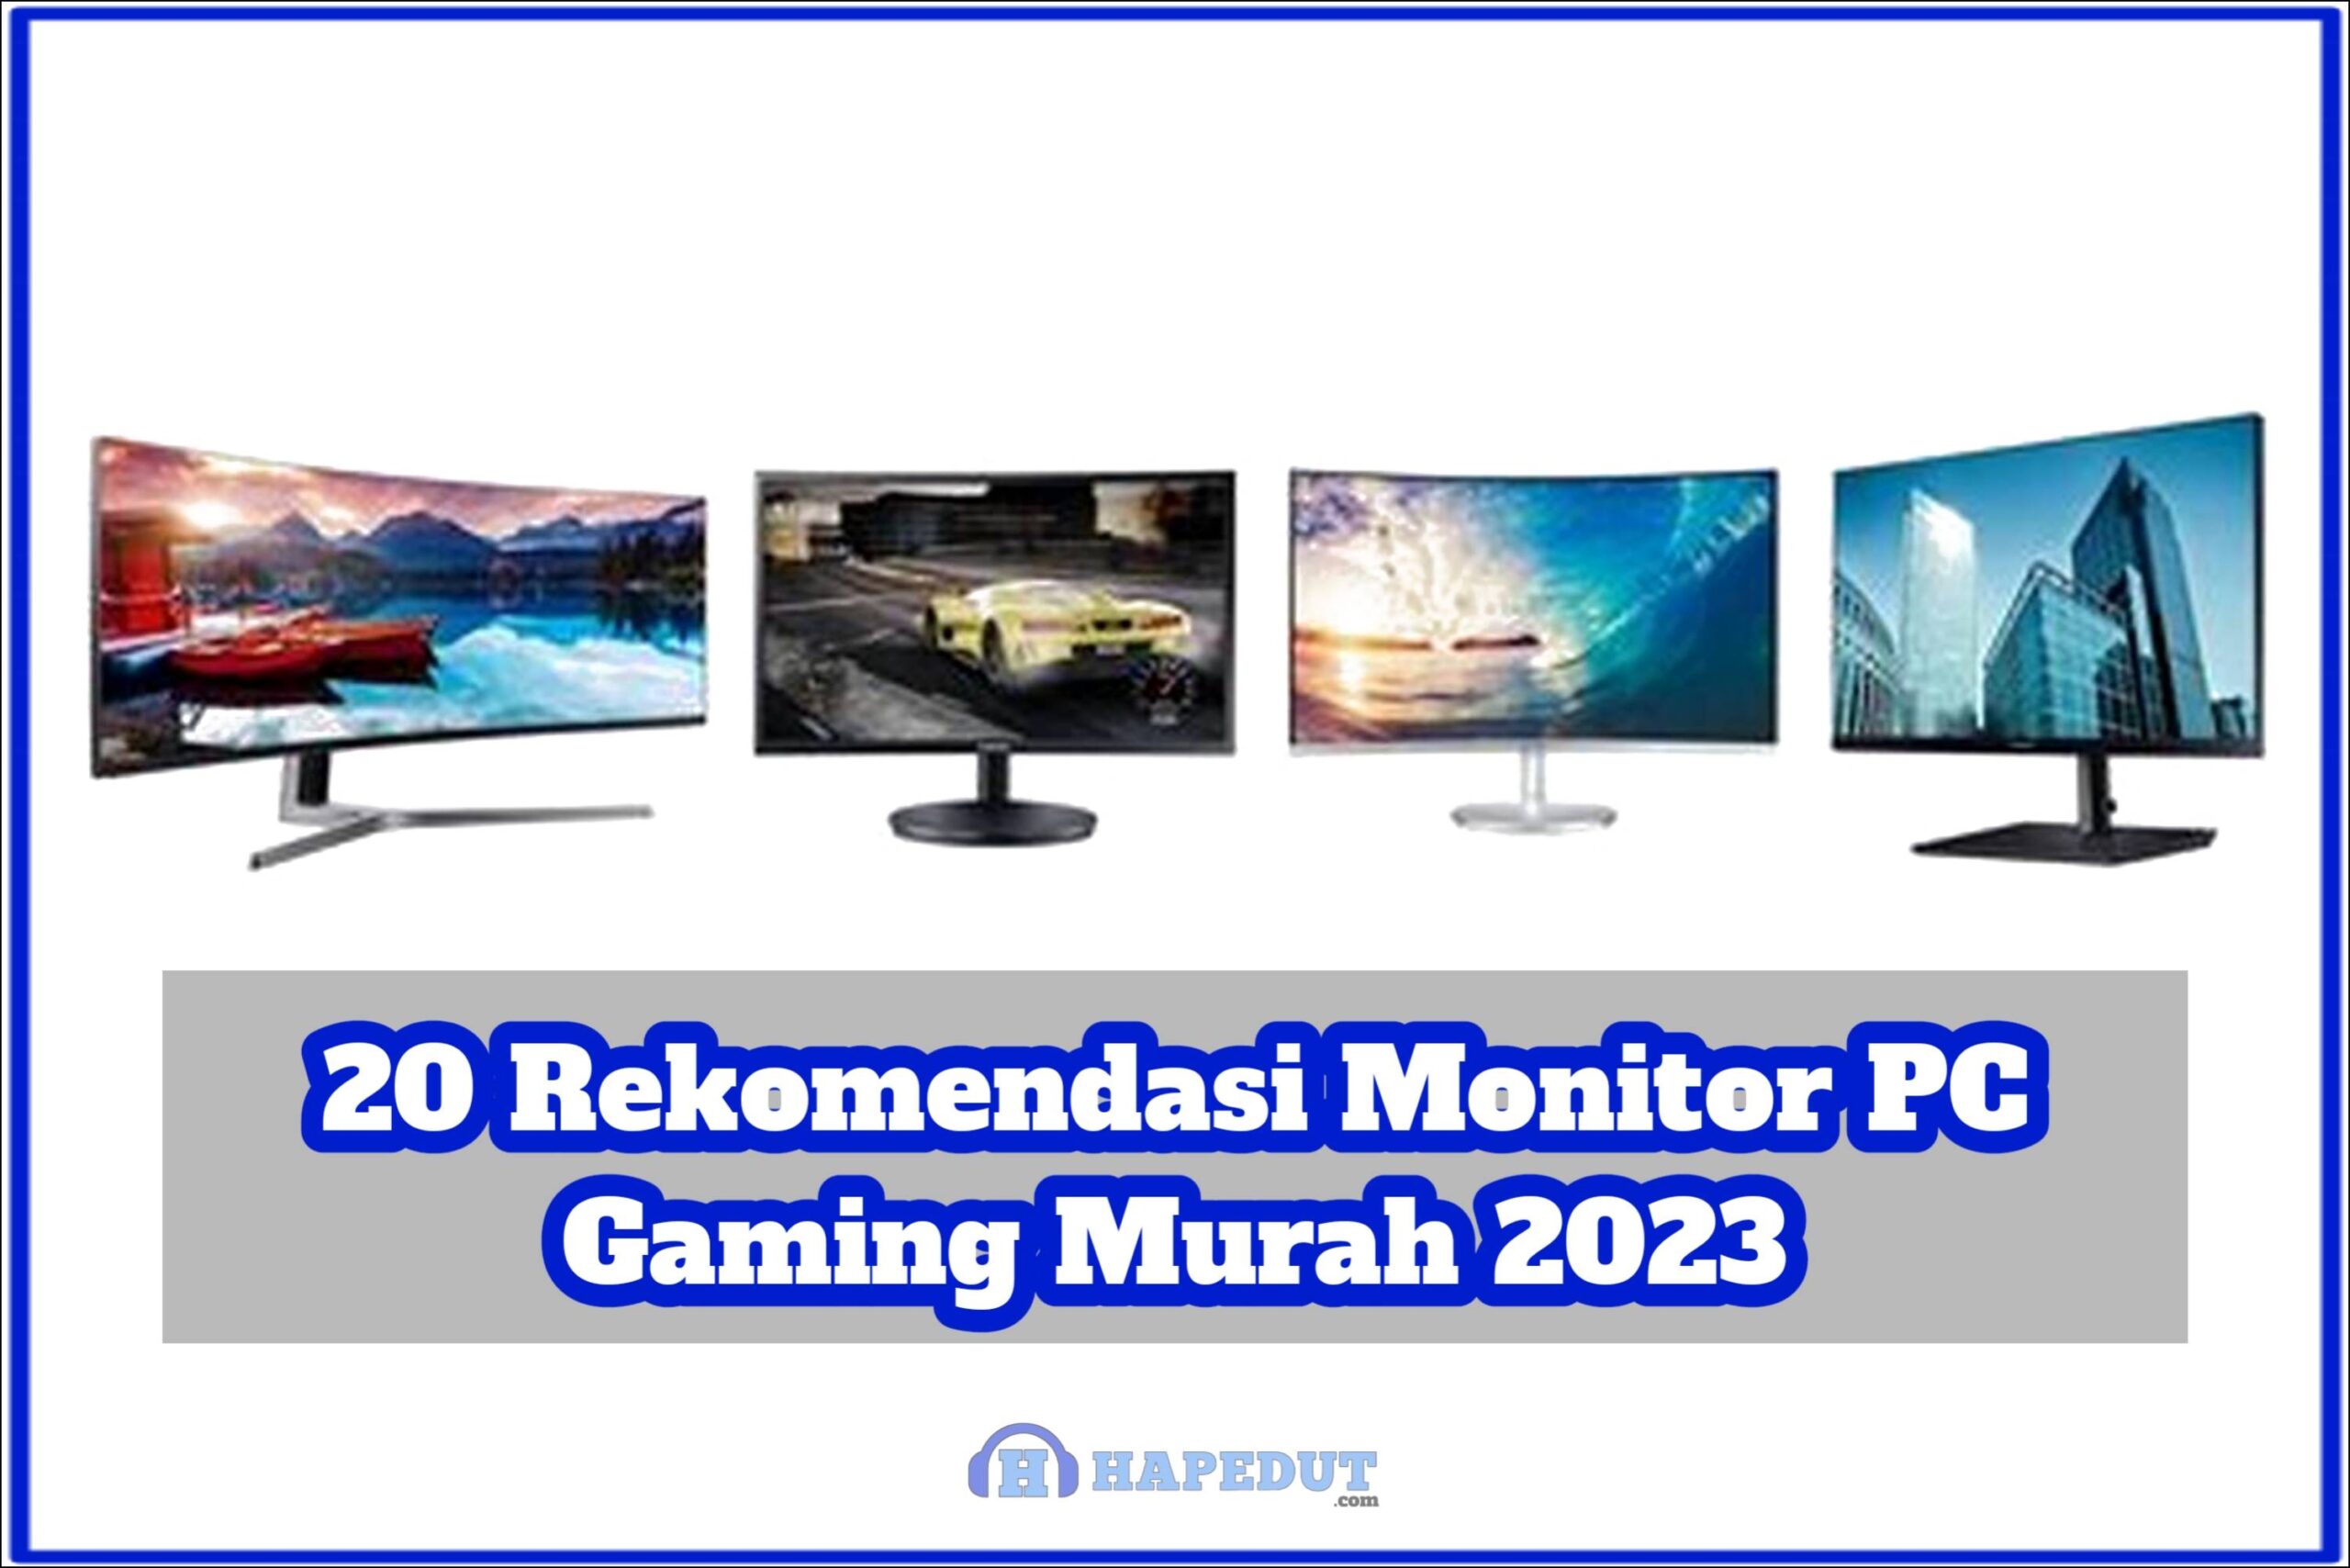 20 Rekomendasi Monitor PC Gaming Murah 2023